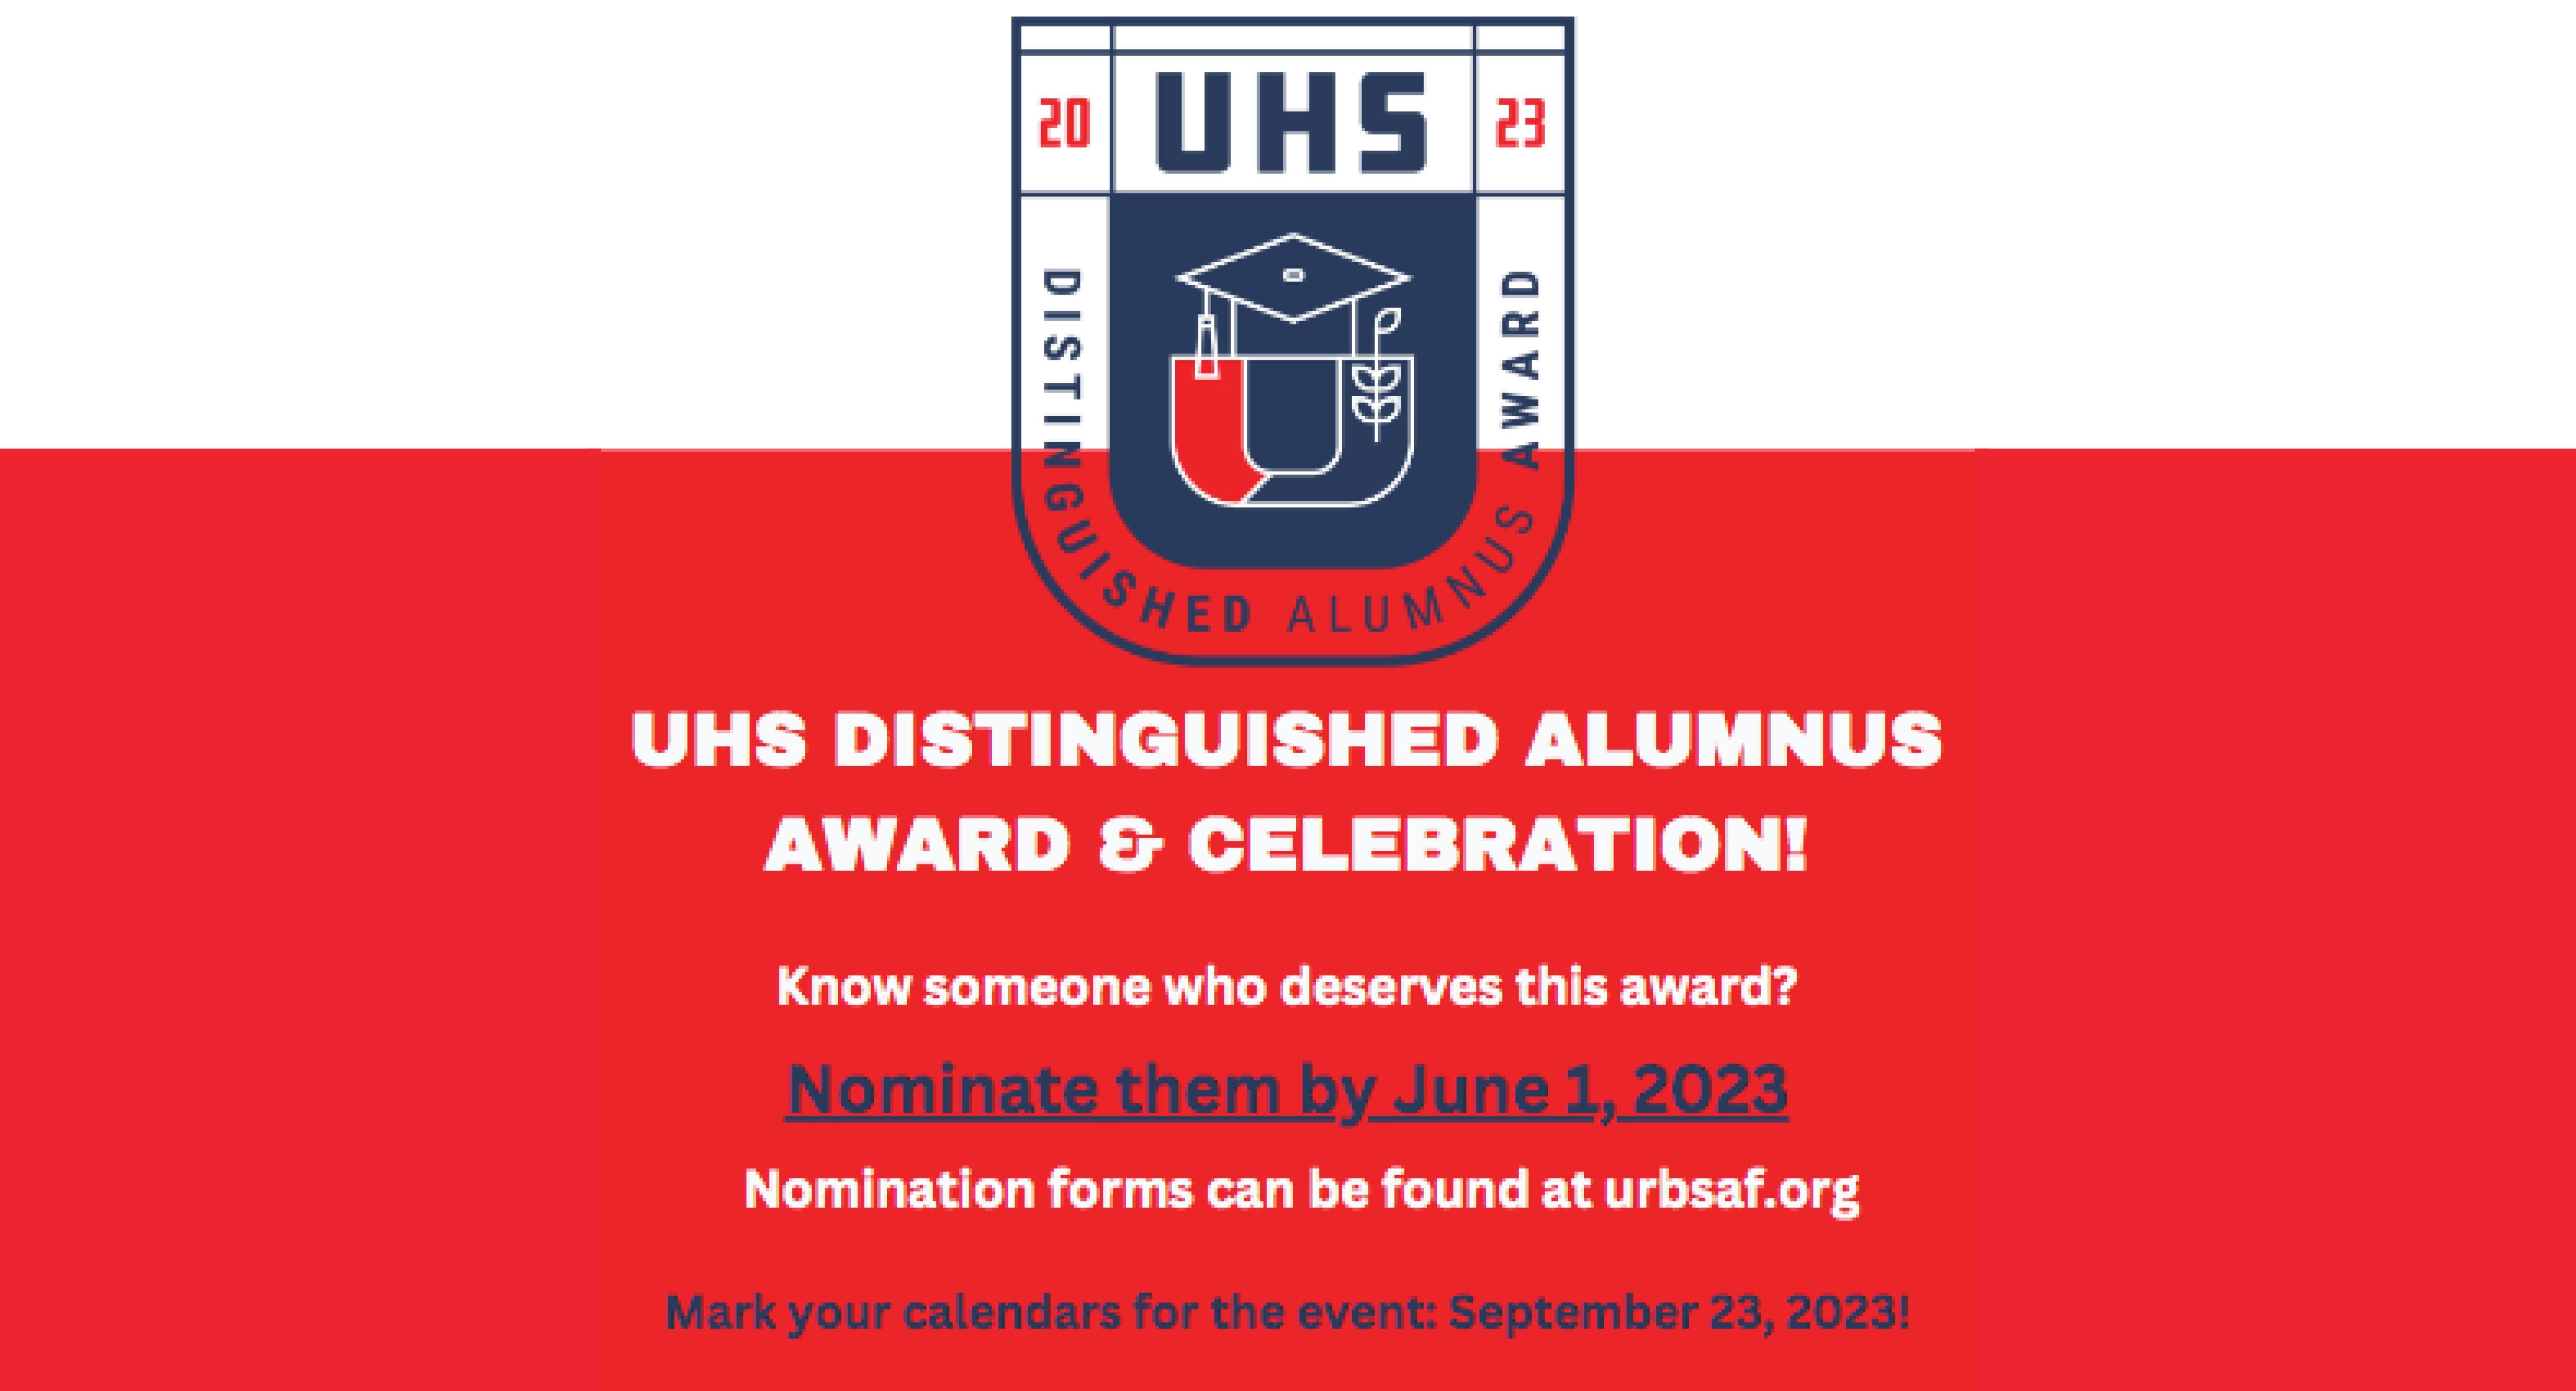 Nominate UHS Distinguished Alumnus Award